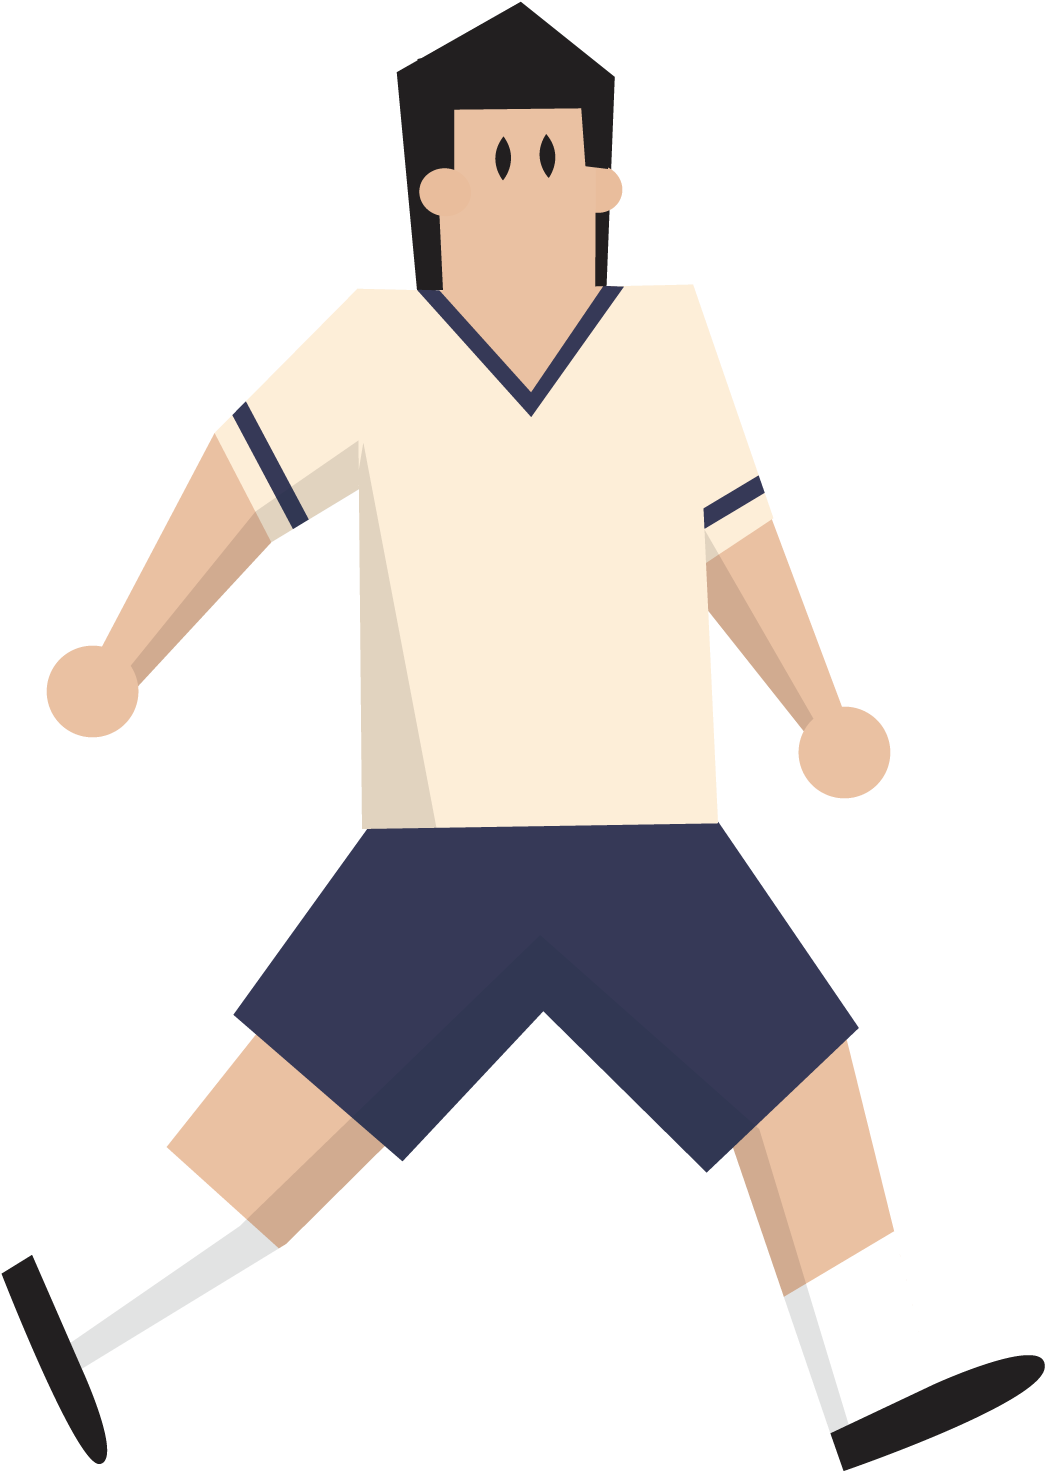 Football Referee Captain Tsubasa - Referee (1500x1500)